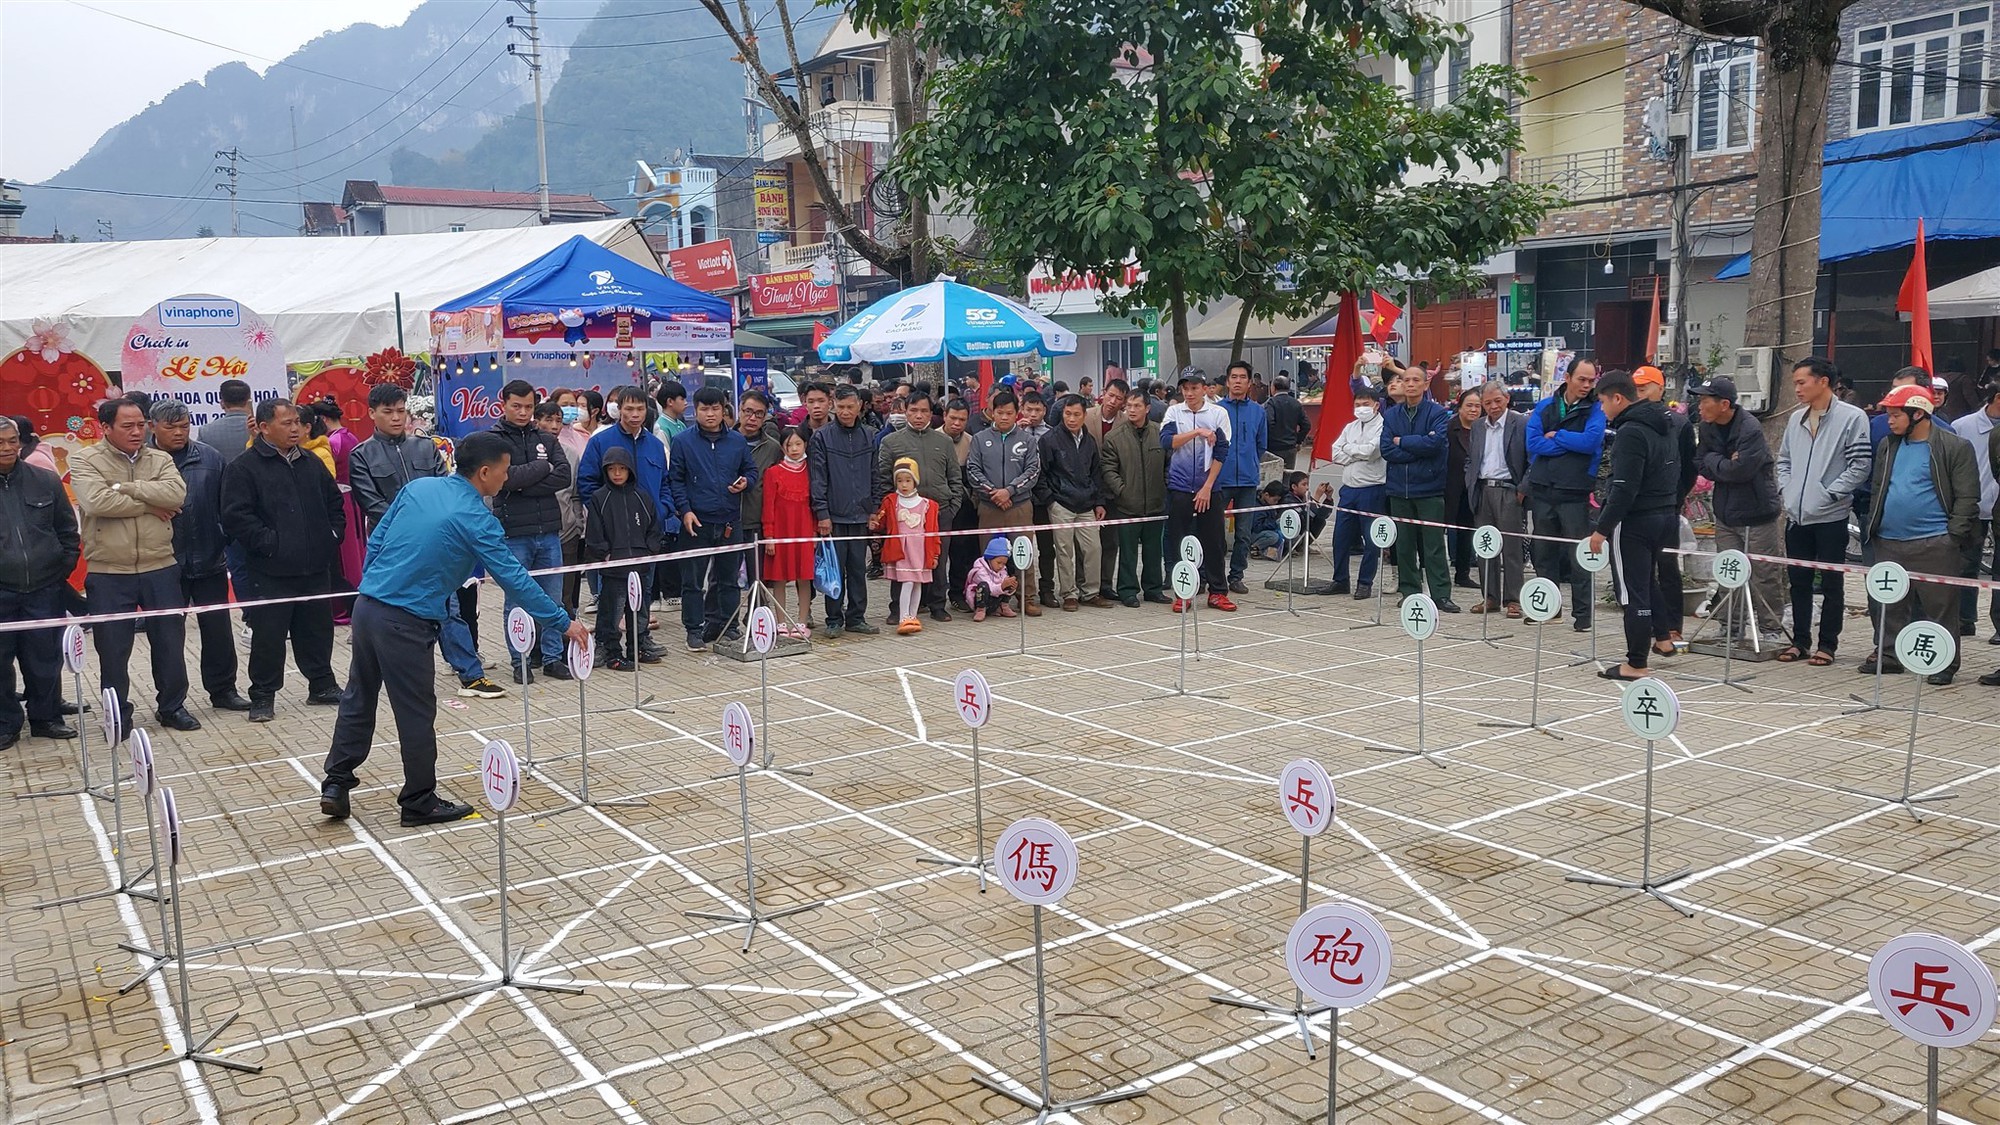 Đây là trò chơi dân gian hút khách xem tại một lễ hội mùa xuân ở Cao Bằng, tham gia toàn trai làng to khỏe - Ảnh 4.